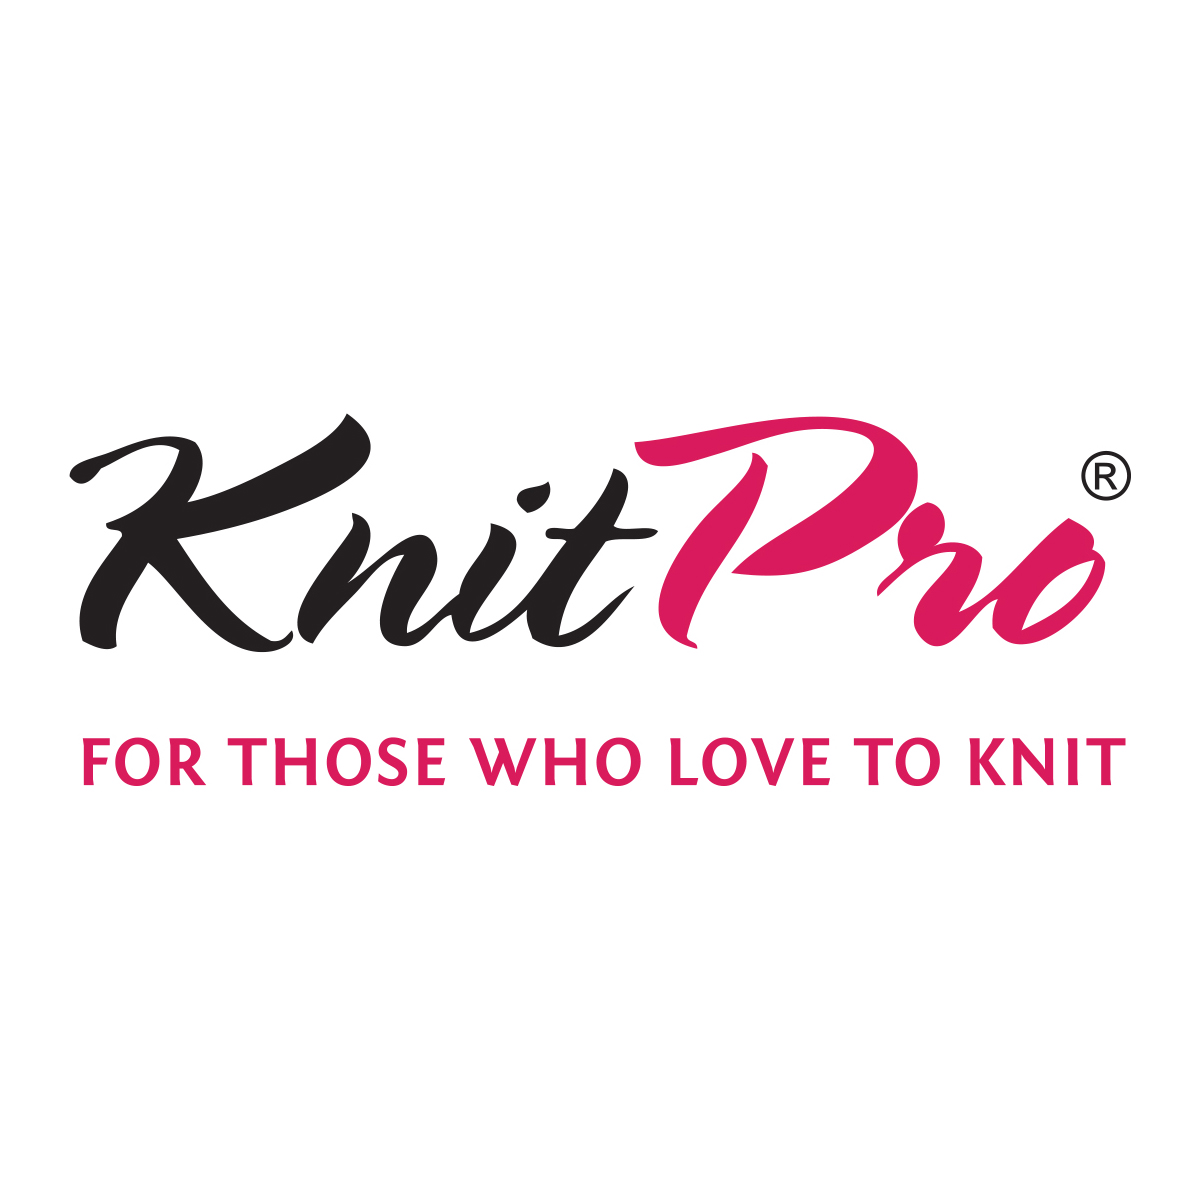 118-knitpro-logo-copy.jpg